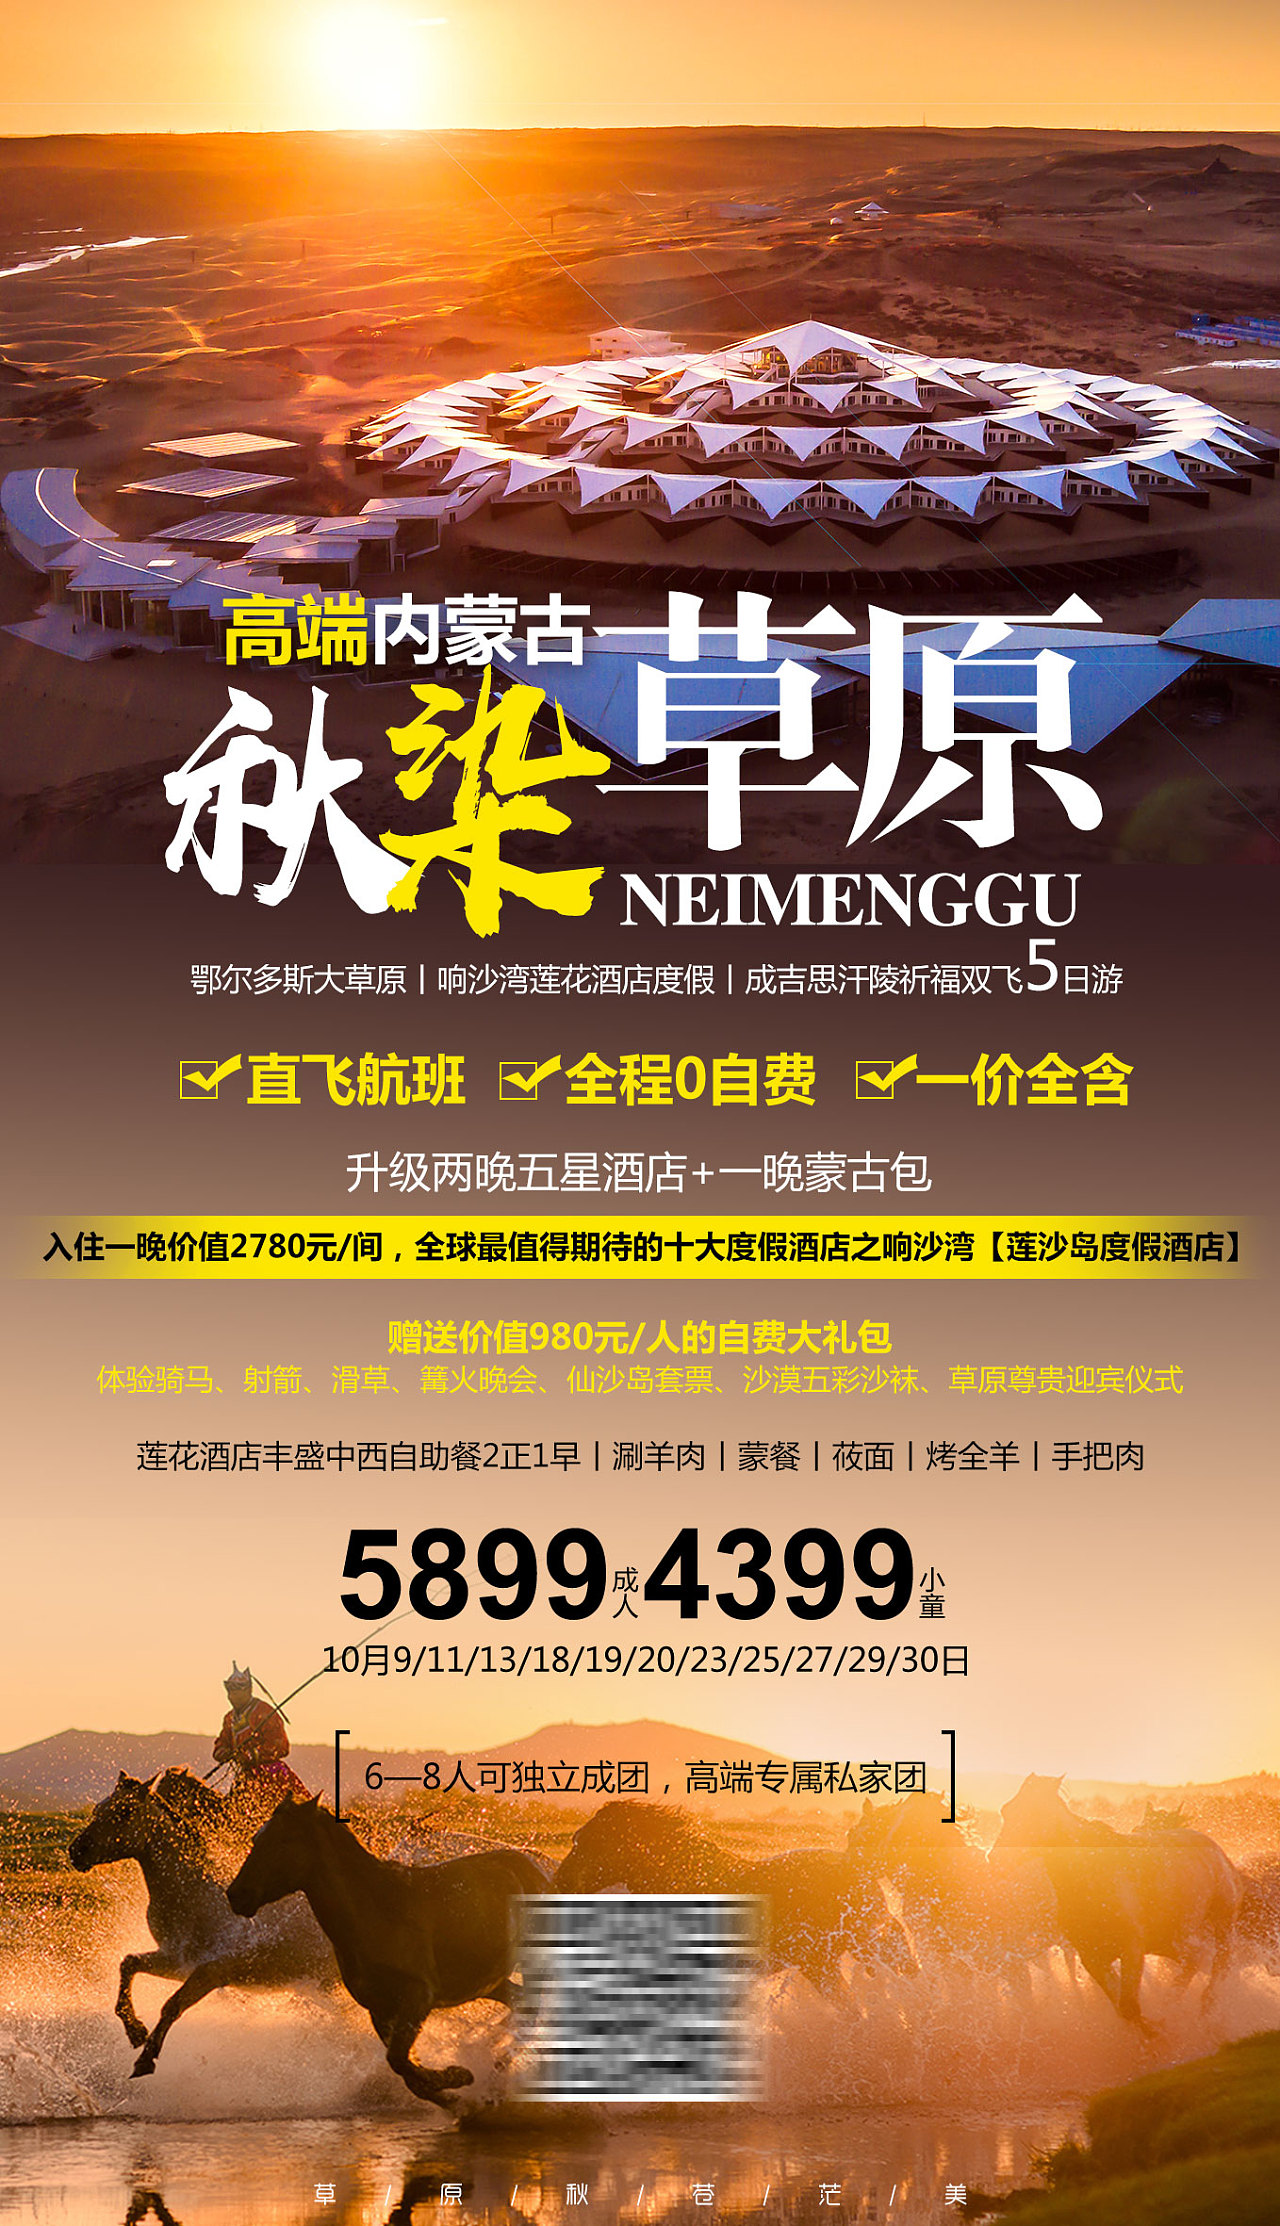 内蒙古旅游攻略 - 真实的内蒙古旅游攻略分享，夏天一起去大草原撒欢避暑吧～ - 知乎